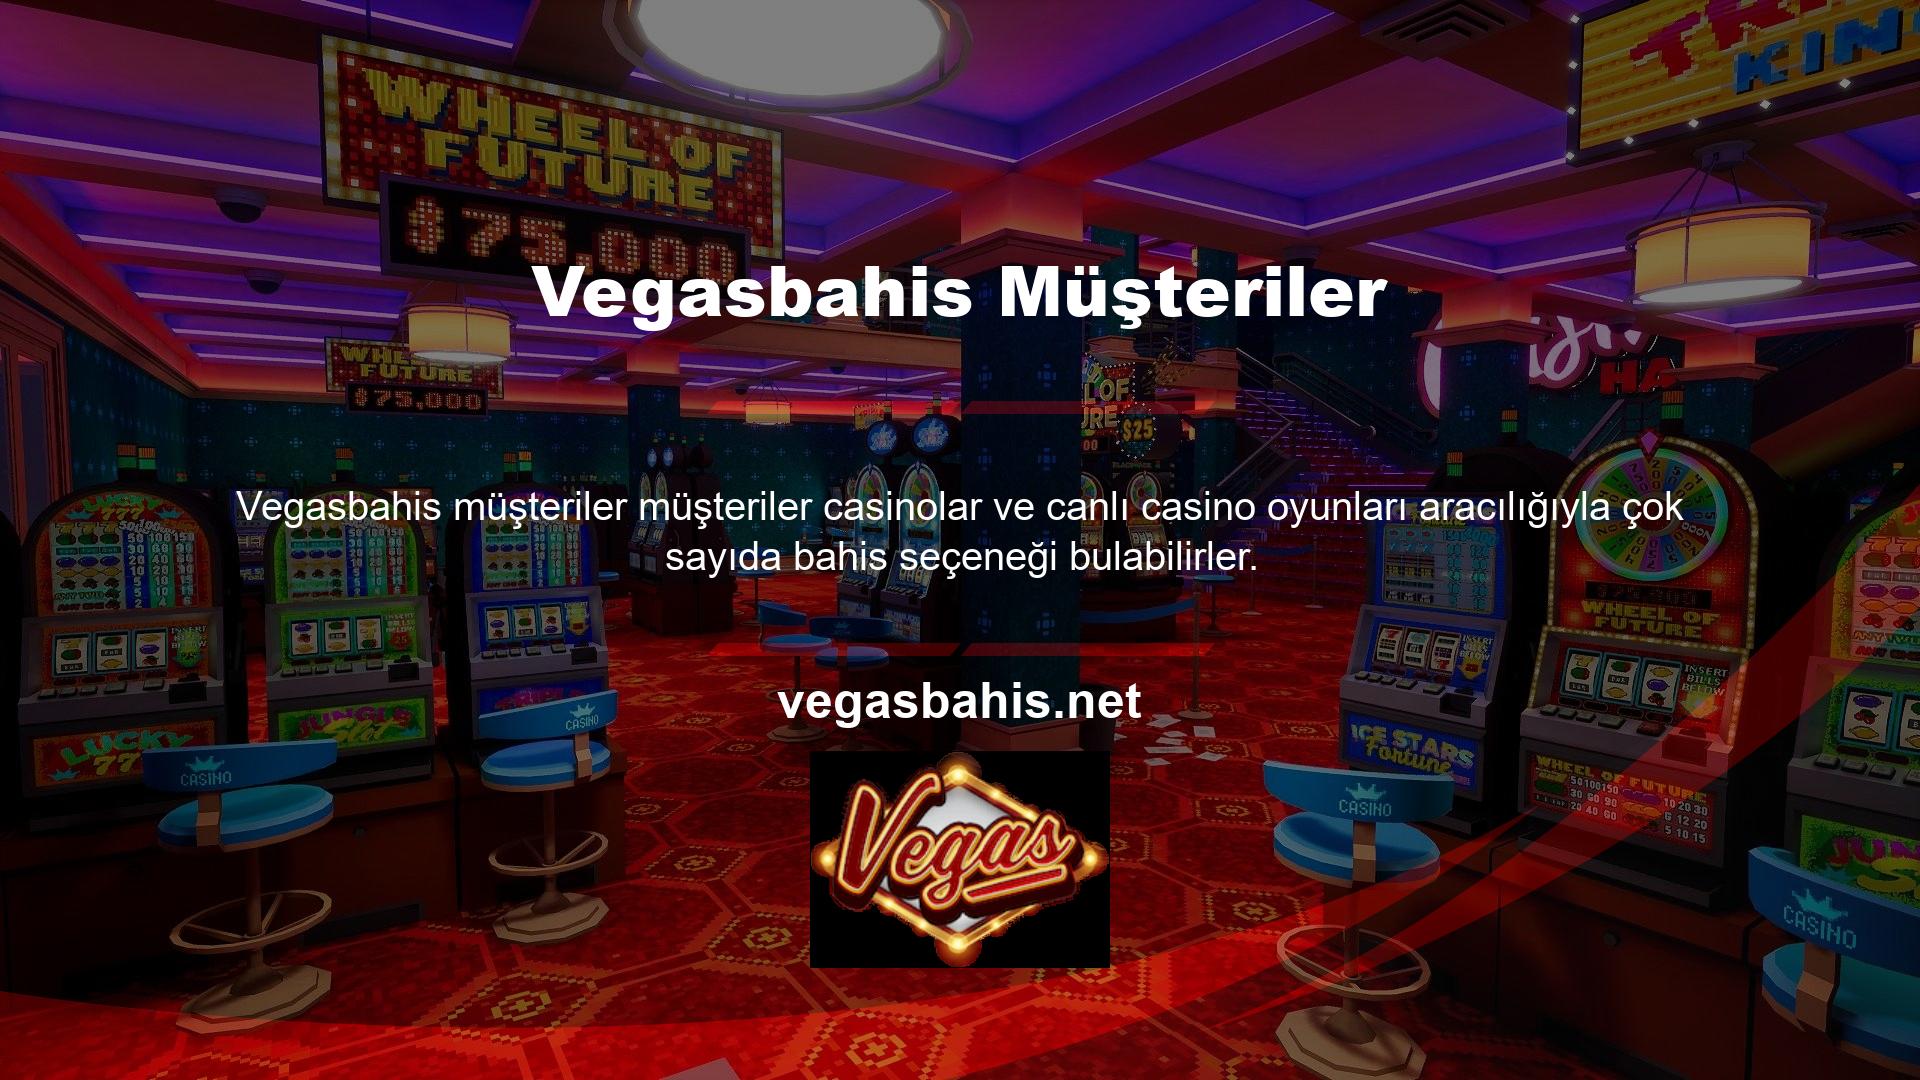 Premium bahis siteleri spor bahisleri ve casino oyunları kullanıcılarına alternatif sunmaktadır